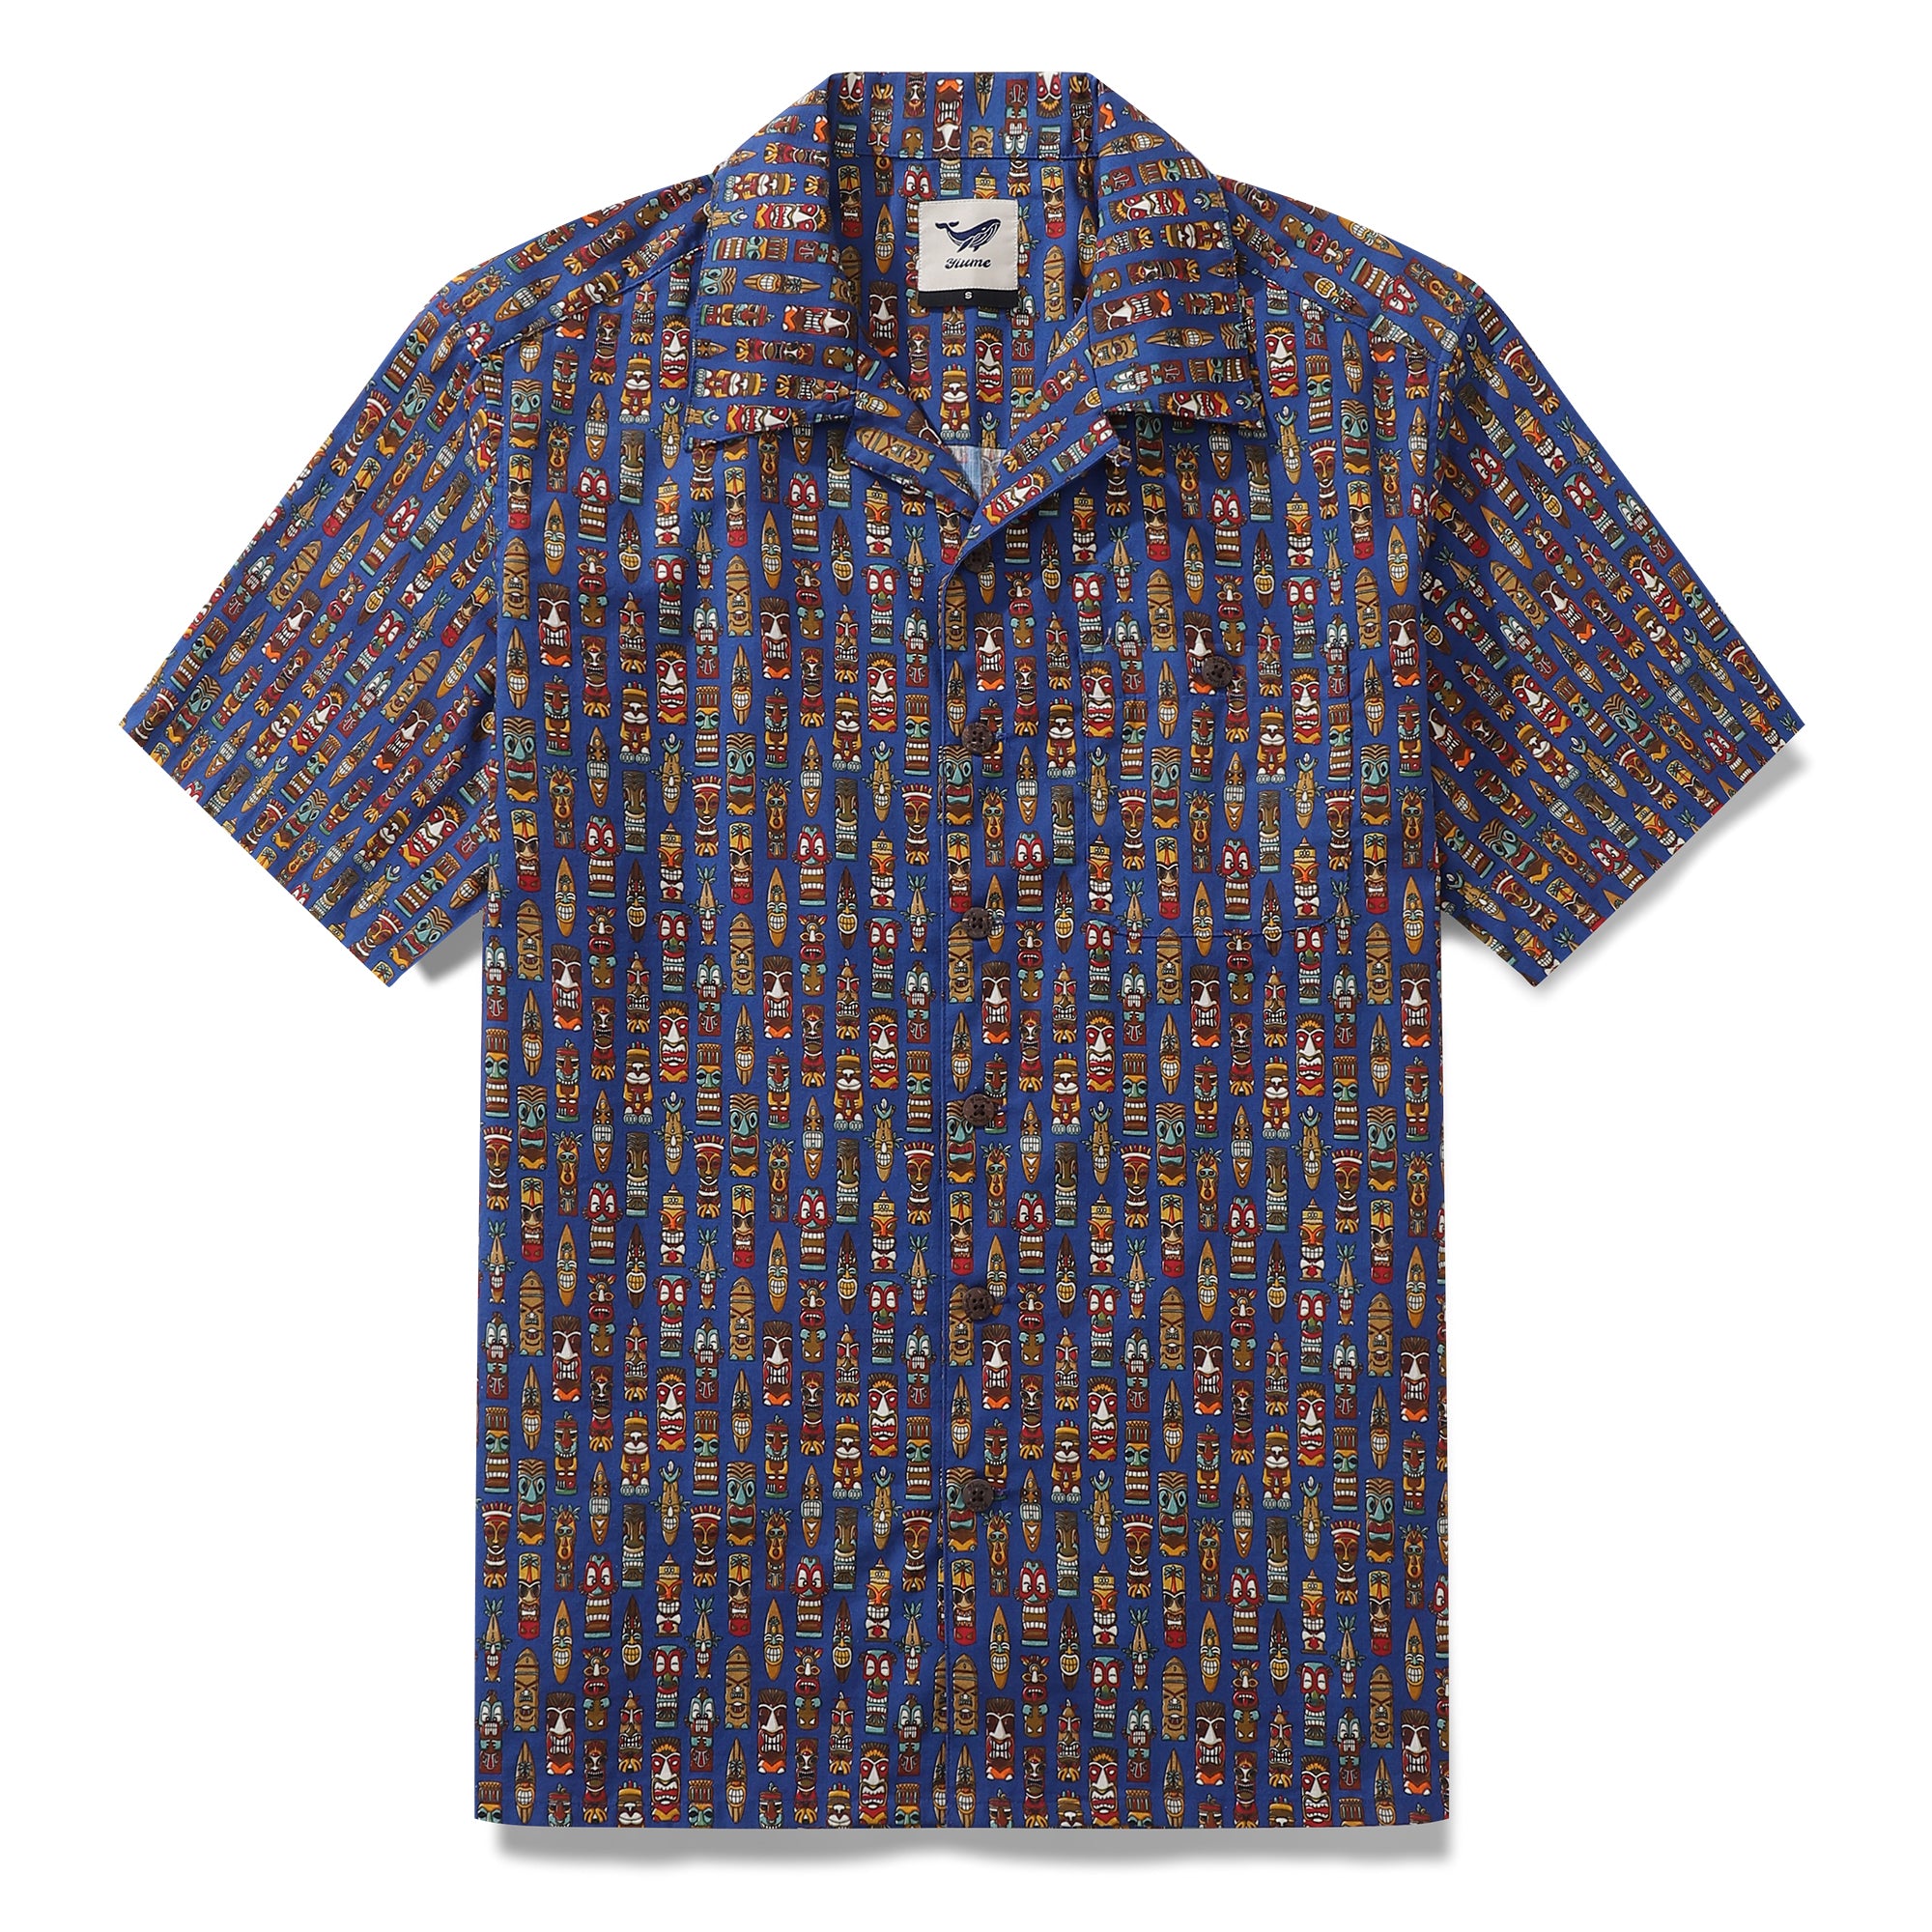 1940s Hawaiian Shirt For Men TIkI Set Shirt Camp Collar 100% Cotton